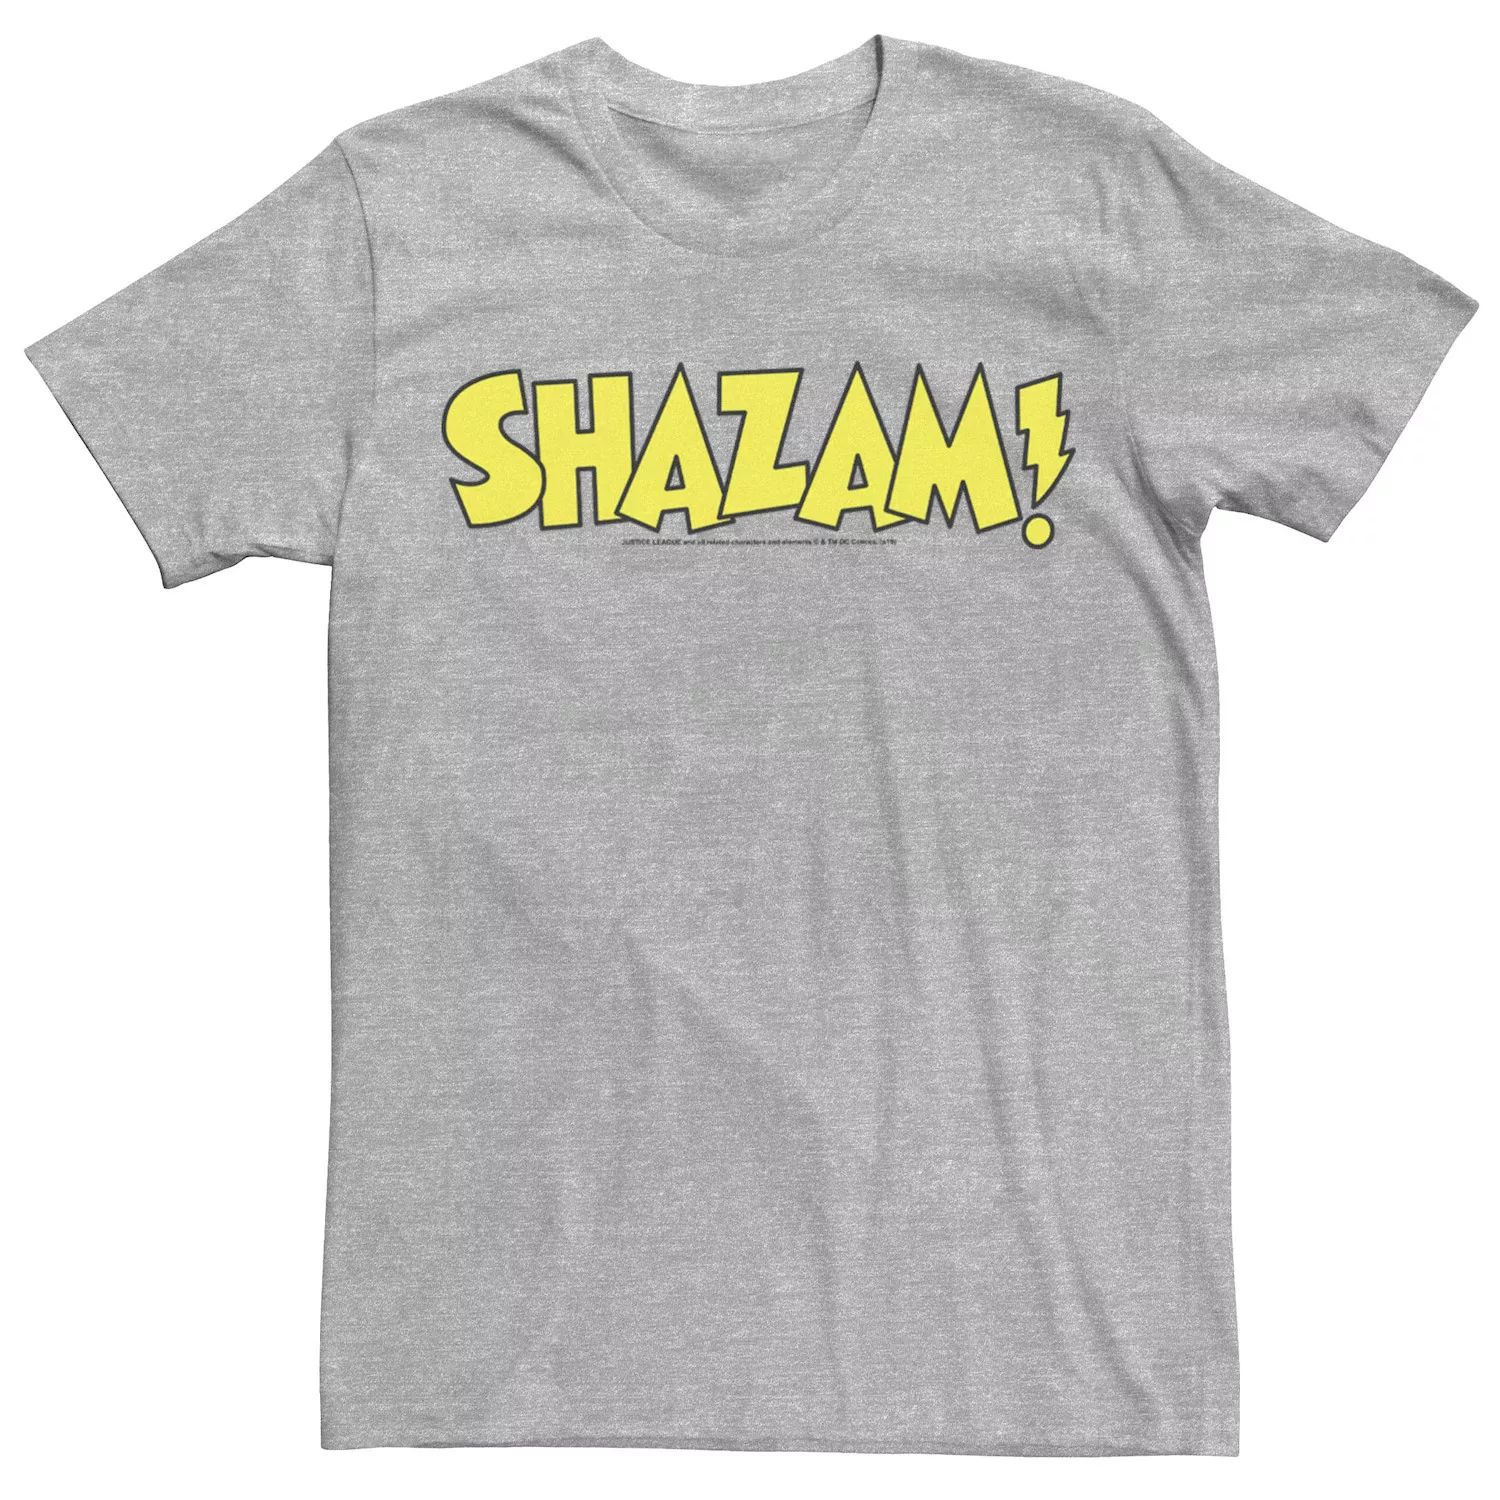 Мужская футболка с жирным текстовым логотипом Shazam DC Comics